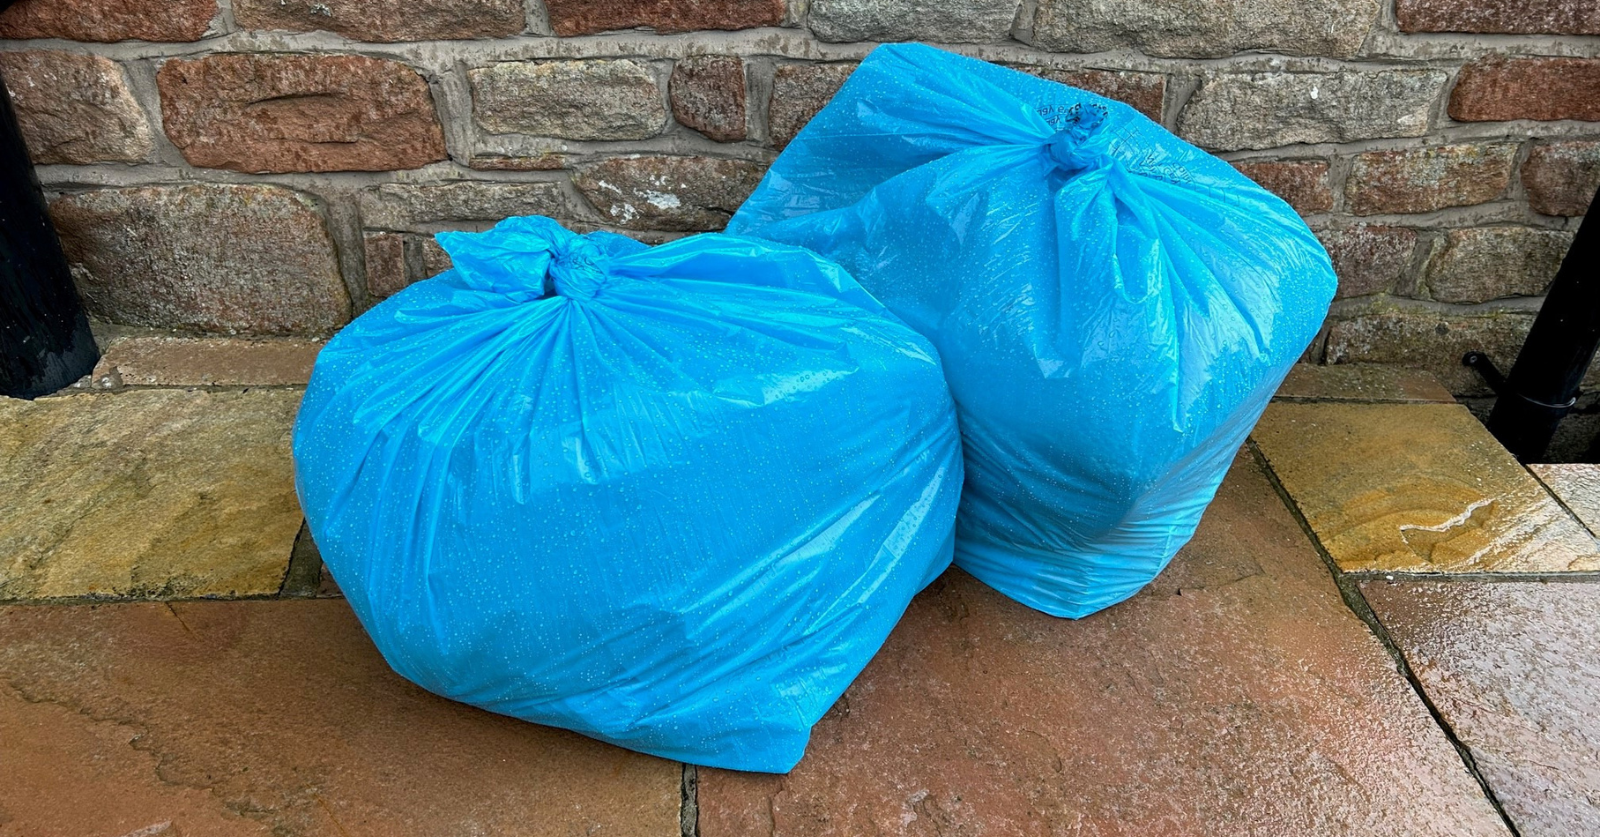 Two blue bin bags